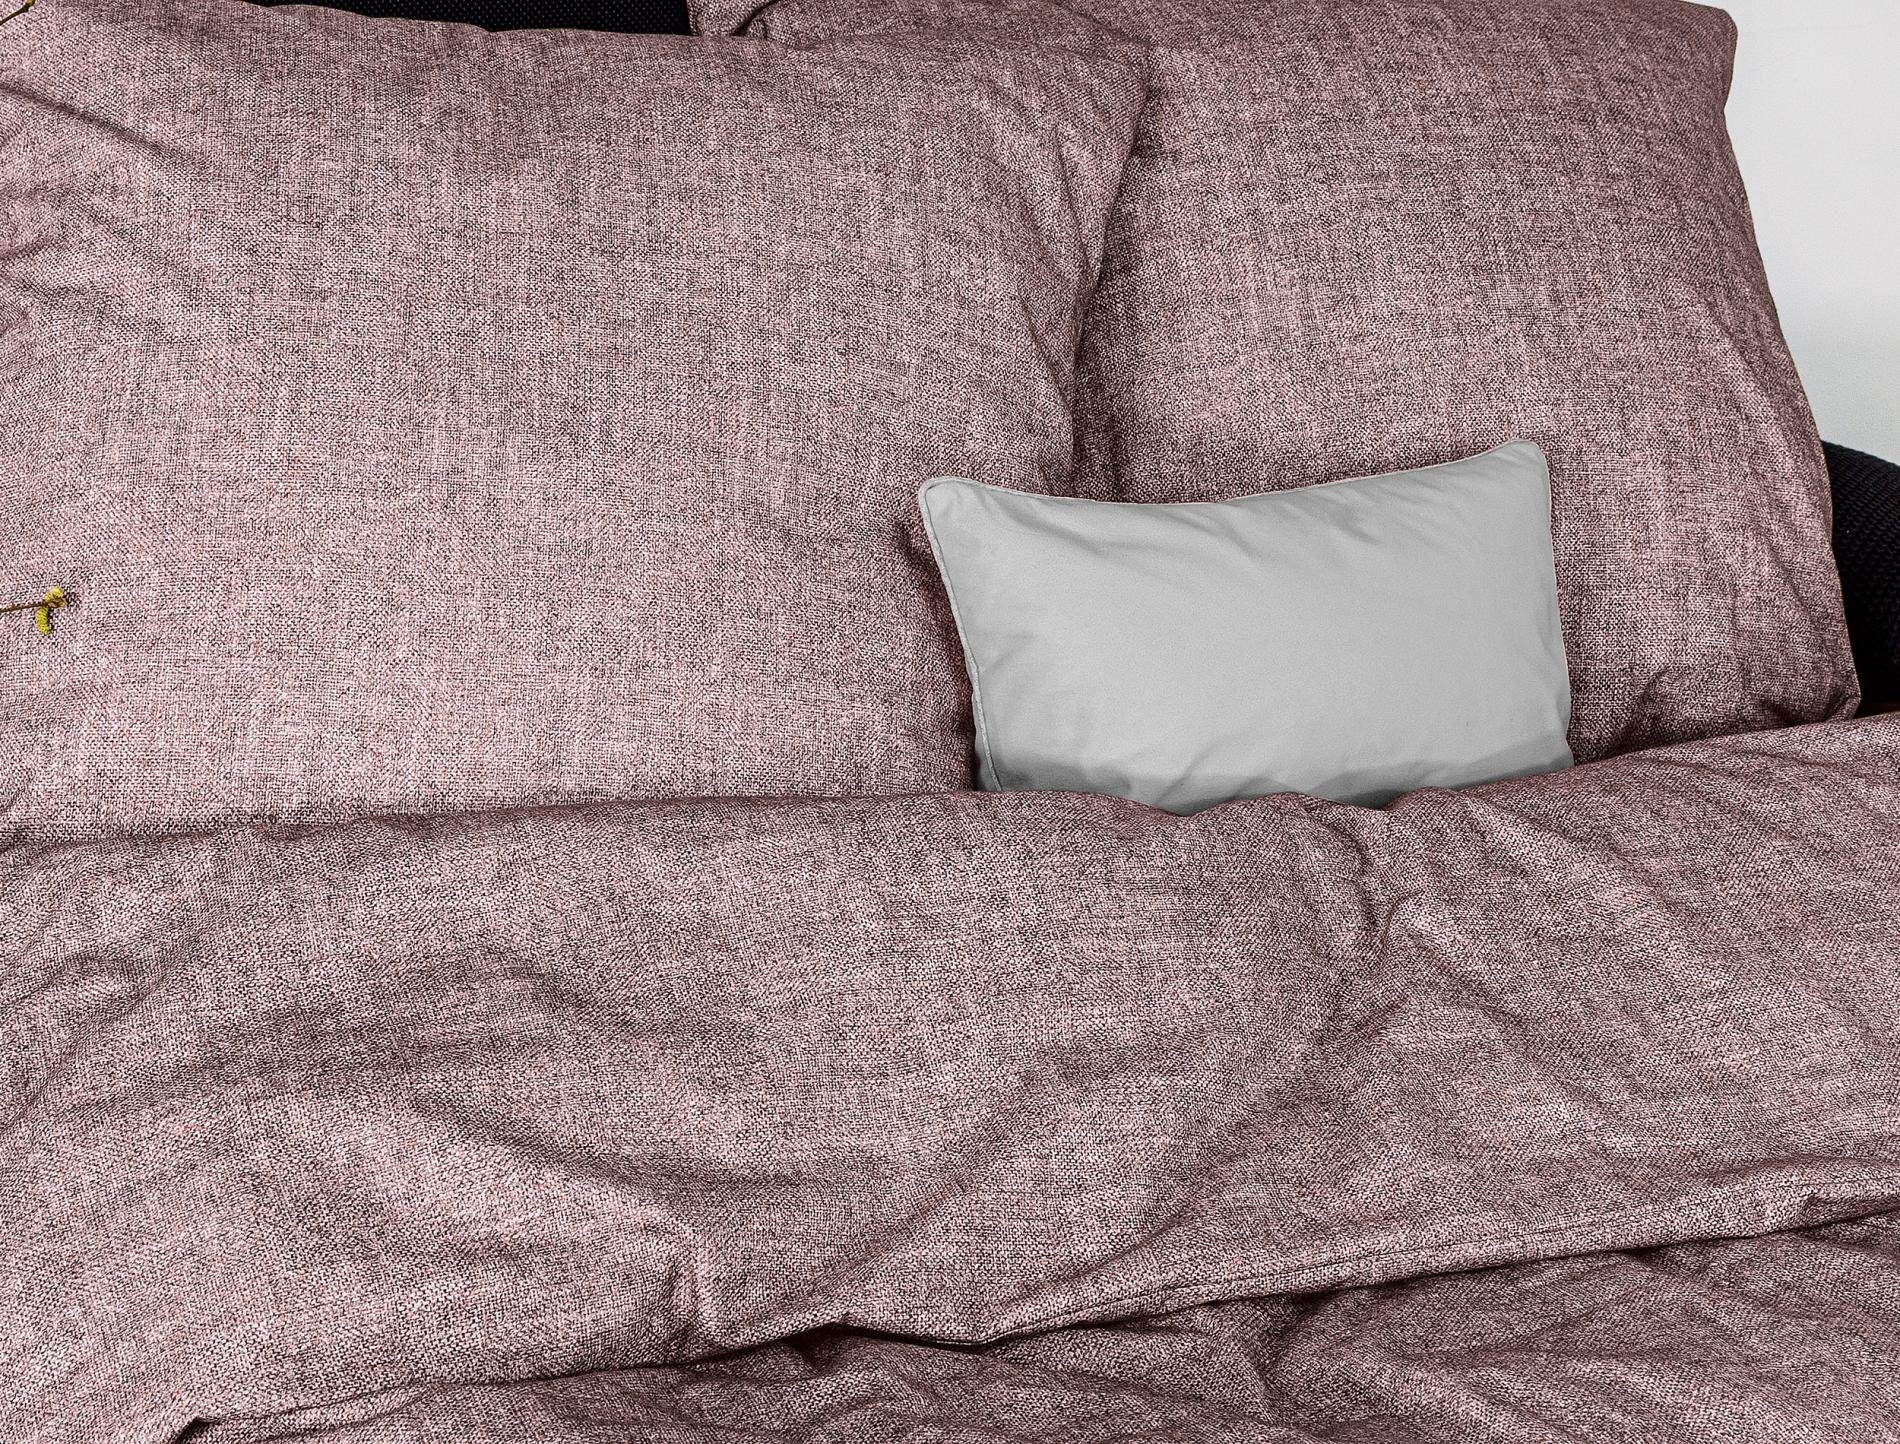 Bettwäsche Flausch-Cotton Bettwäsche Set Mink 155 x 220 cm rosa, Irisette, Baumolle, 2 teilig, Bettbezug Kopfkissenbezug Set kuschelig weich hochwertig